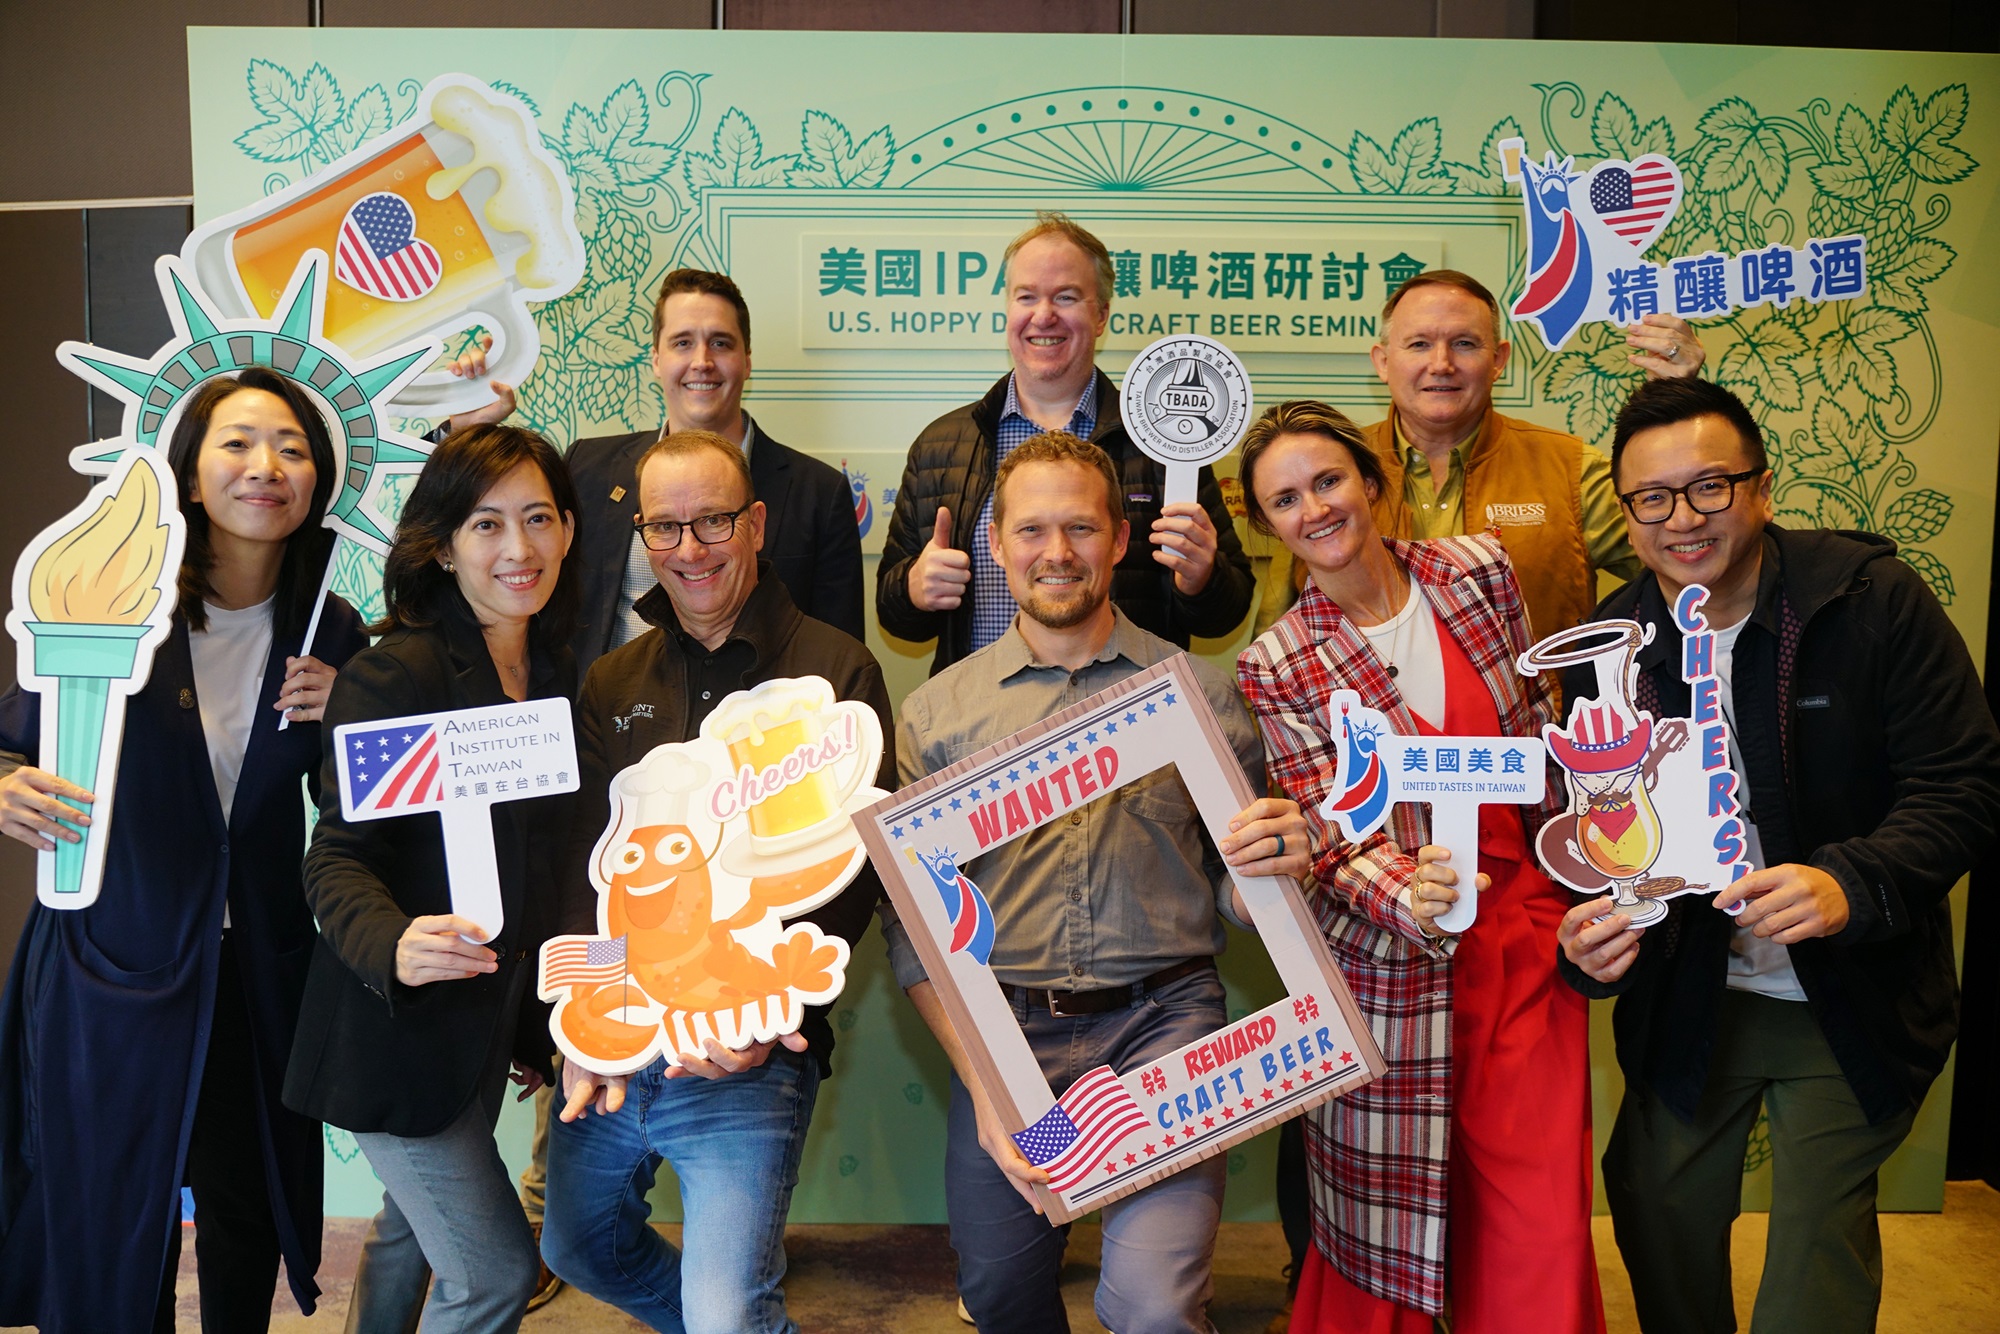 美國IPA精釀啤酒研討會，由美國在台協會主辦，邀請美國精釀啤酒業者來台與台灣酒品製造協會作首次交流